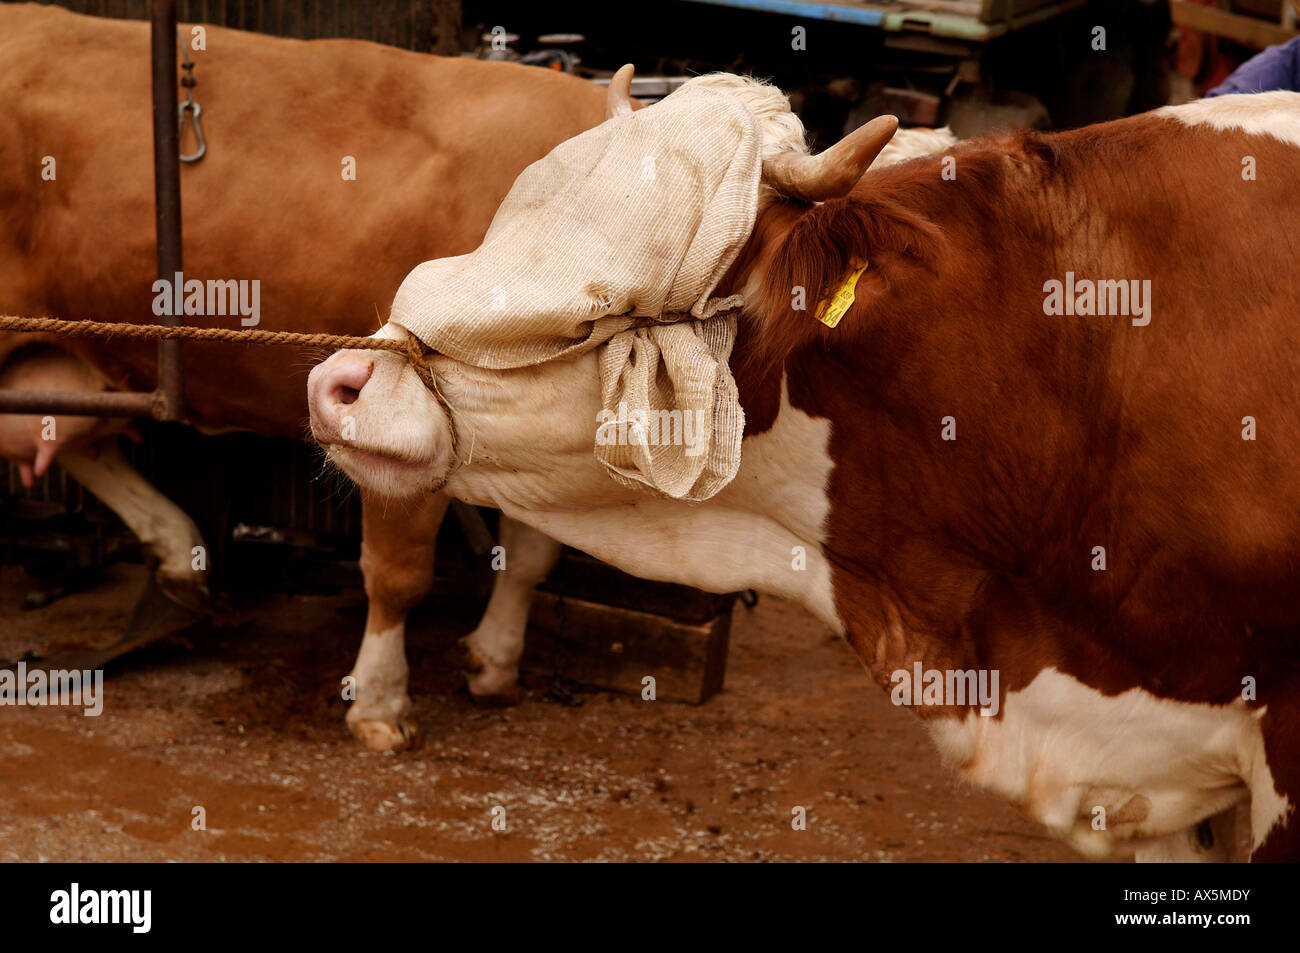 Kuh gezogen wird, um seine Hufe getrimmt, Eckental, Middle Franconia, Bayern, Deutschland, Europa Stockfoto